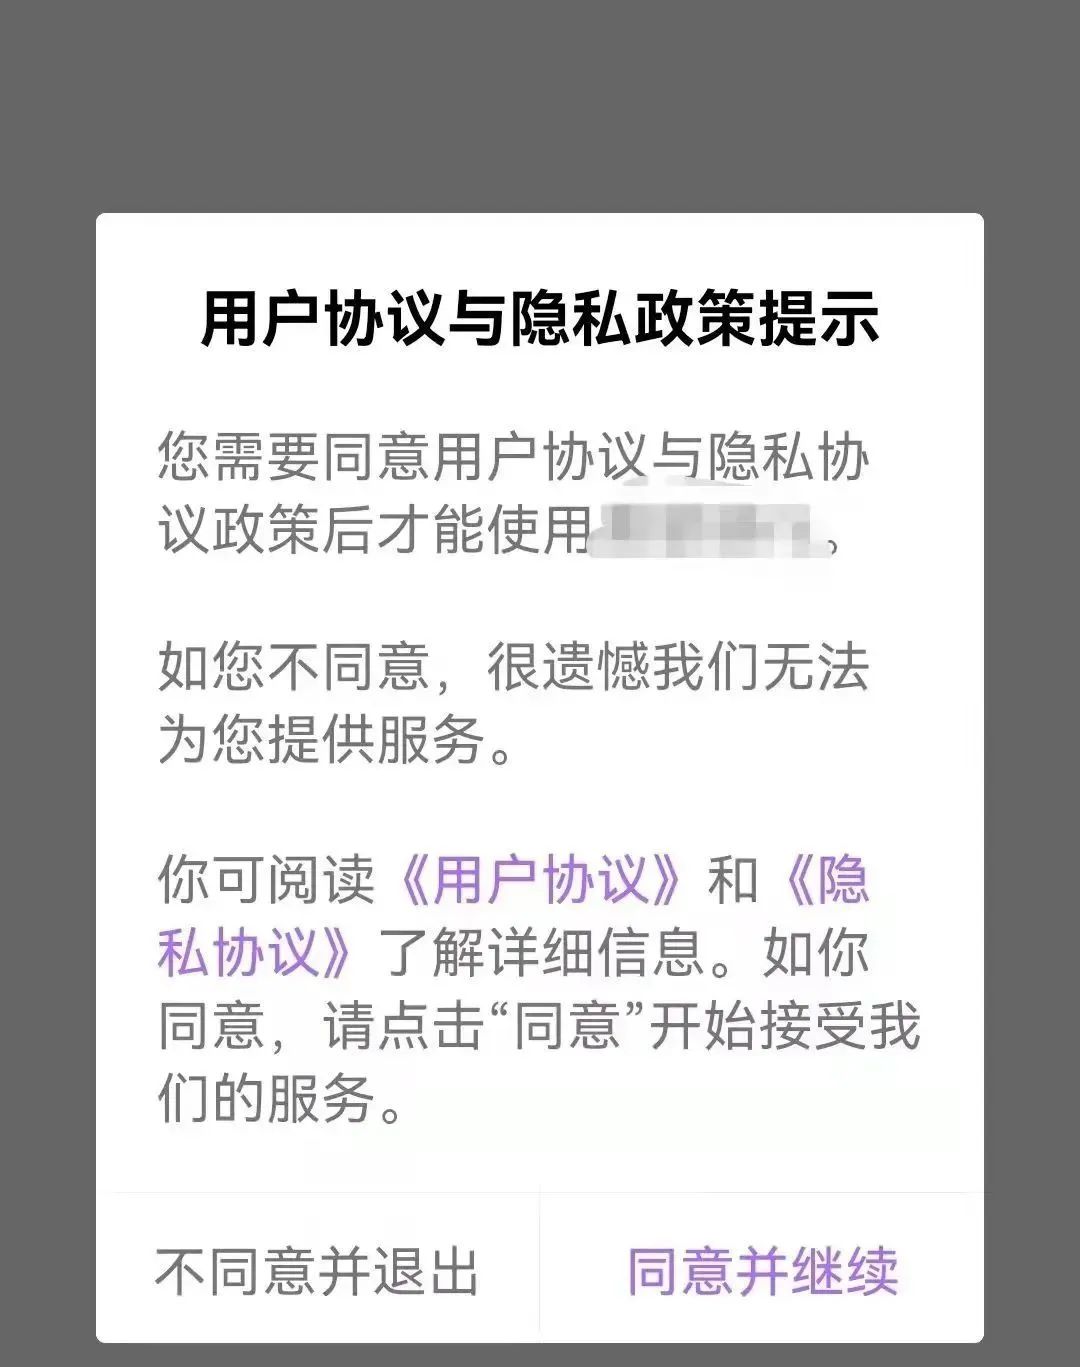 中文最新版在线官网_whatsapp中文最新版_中文最新版地址